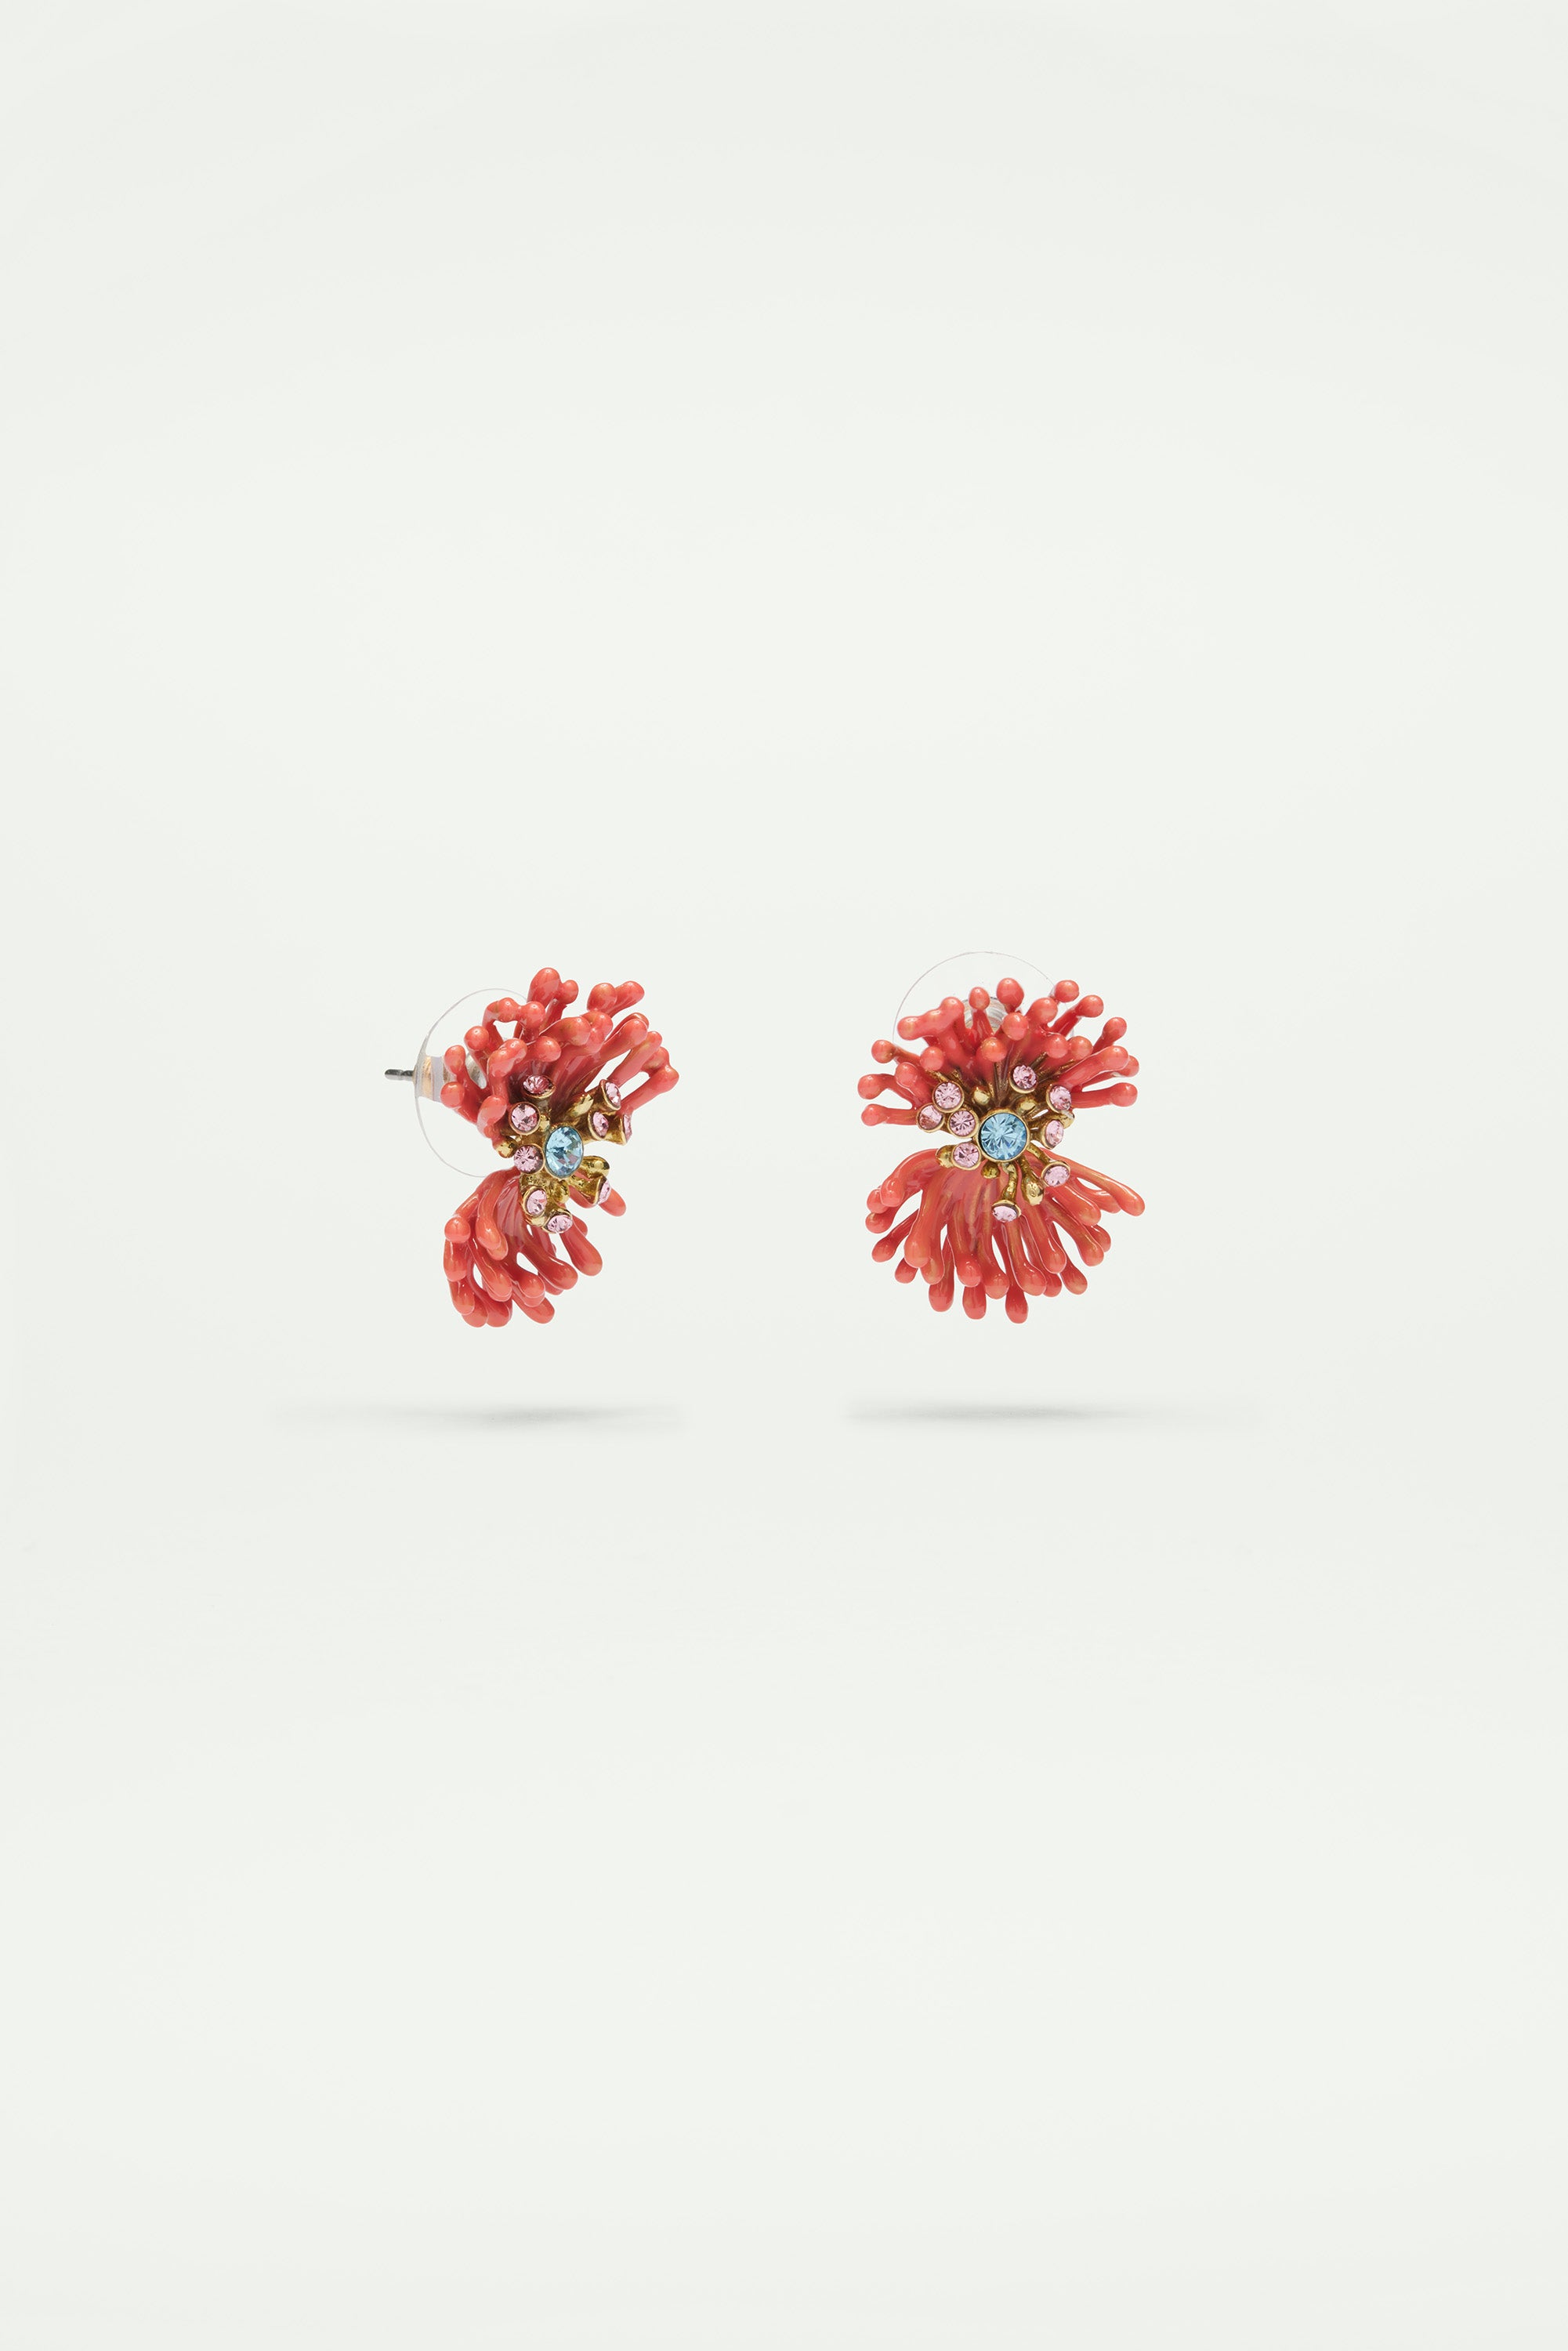 Boucles d'oreilles tiges anémone rose et pierres colorées